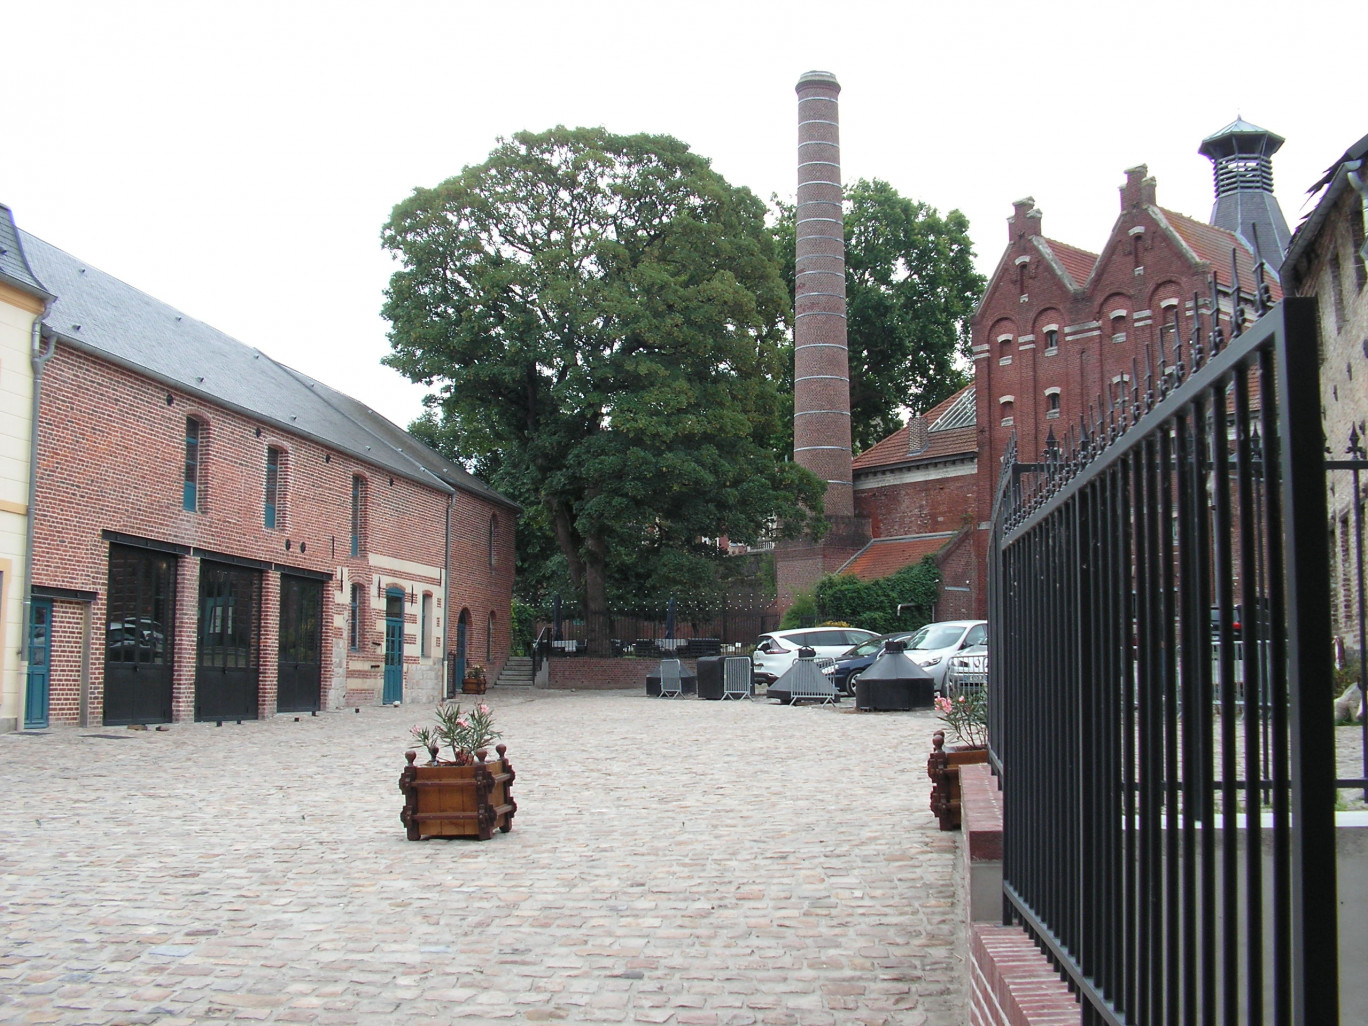 Du porche rouvert en piétonnier, une vue de la brasserie, de la cour intérieure en partie rénovée et des bâtiments restaurés, extérieurement et intérieurement (à gauche).